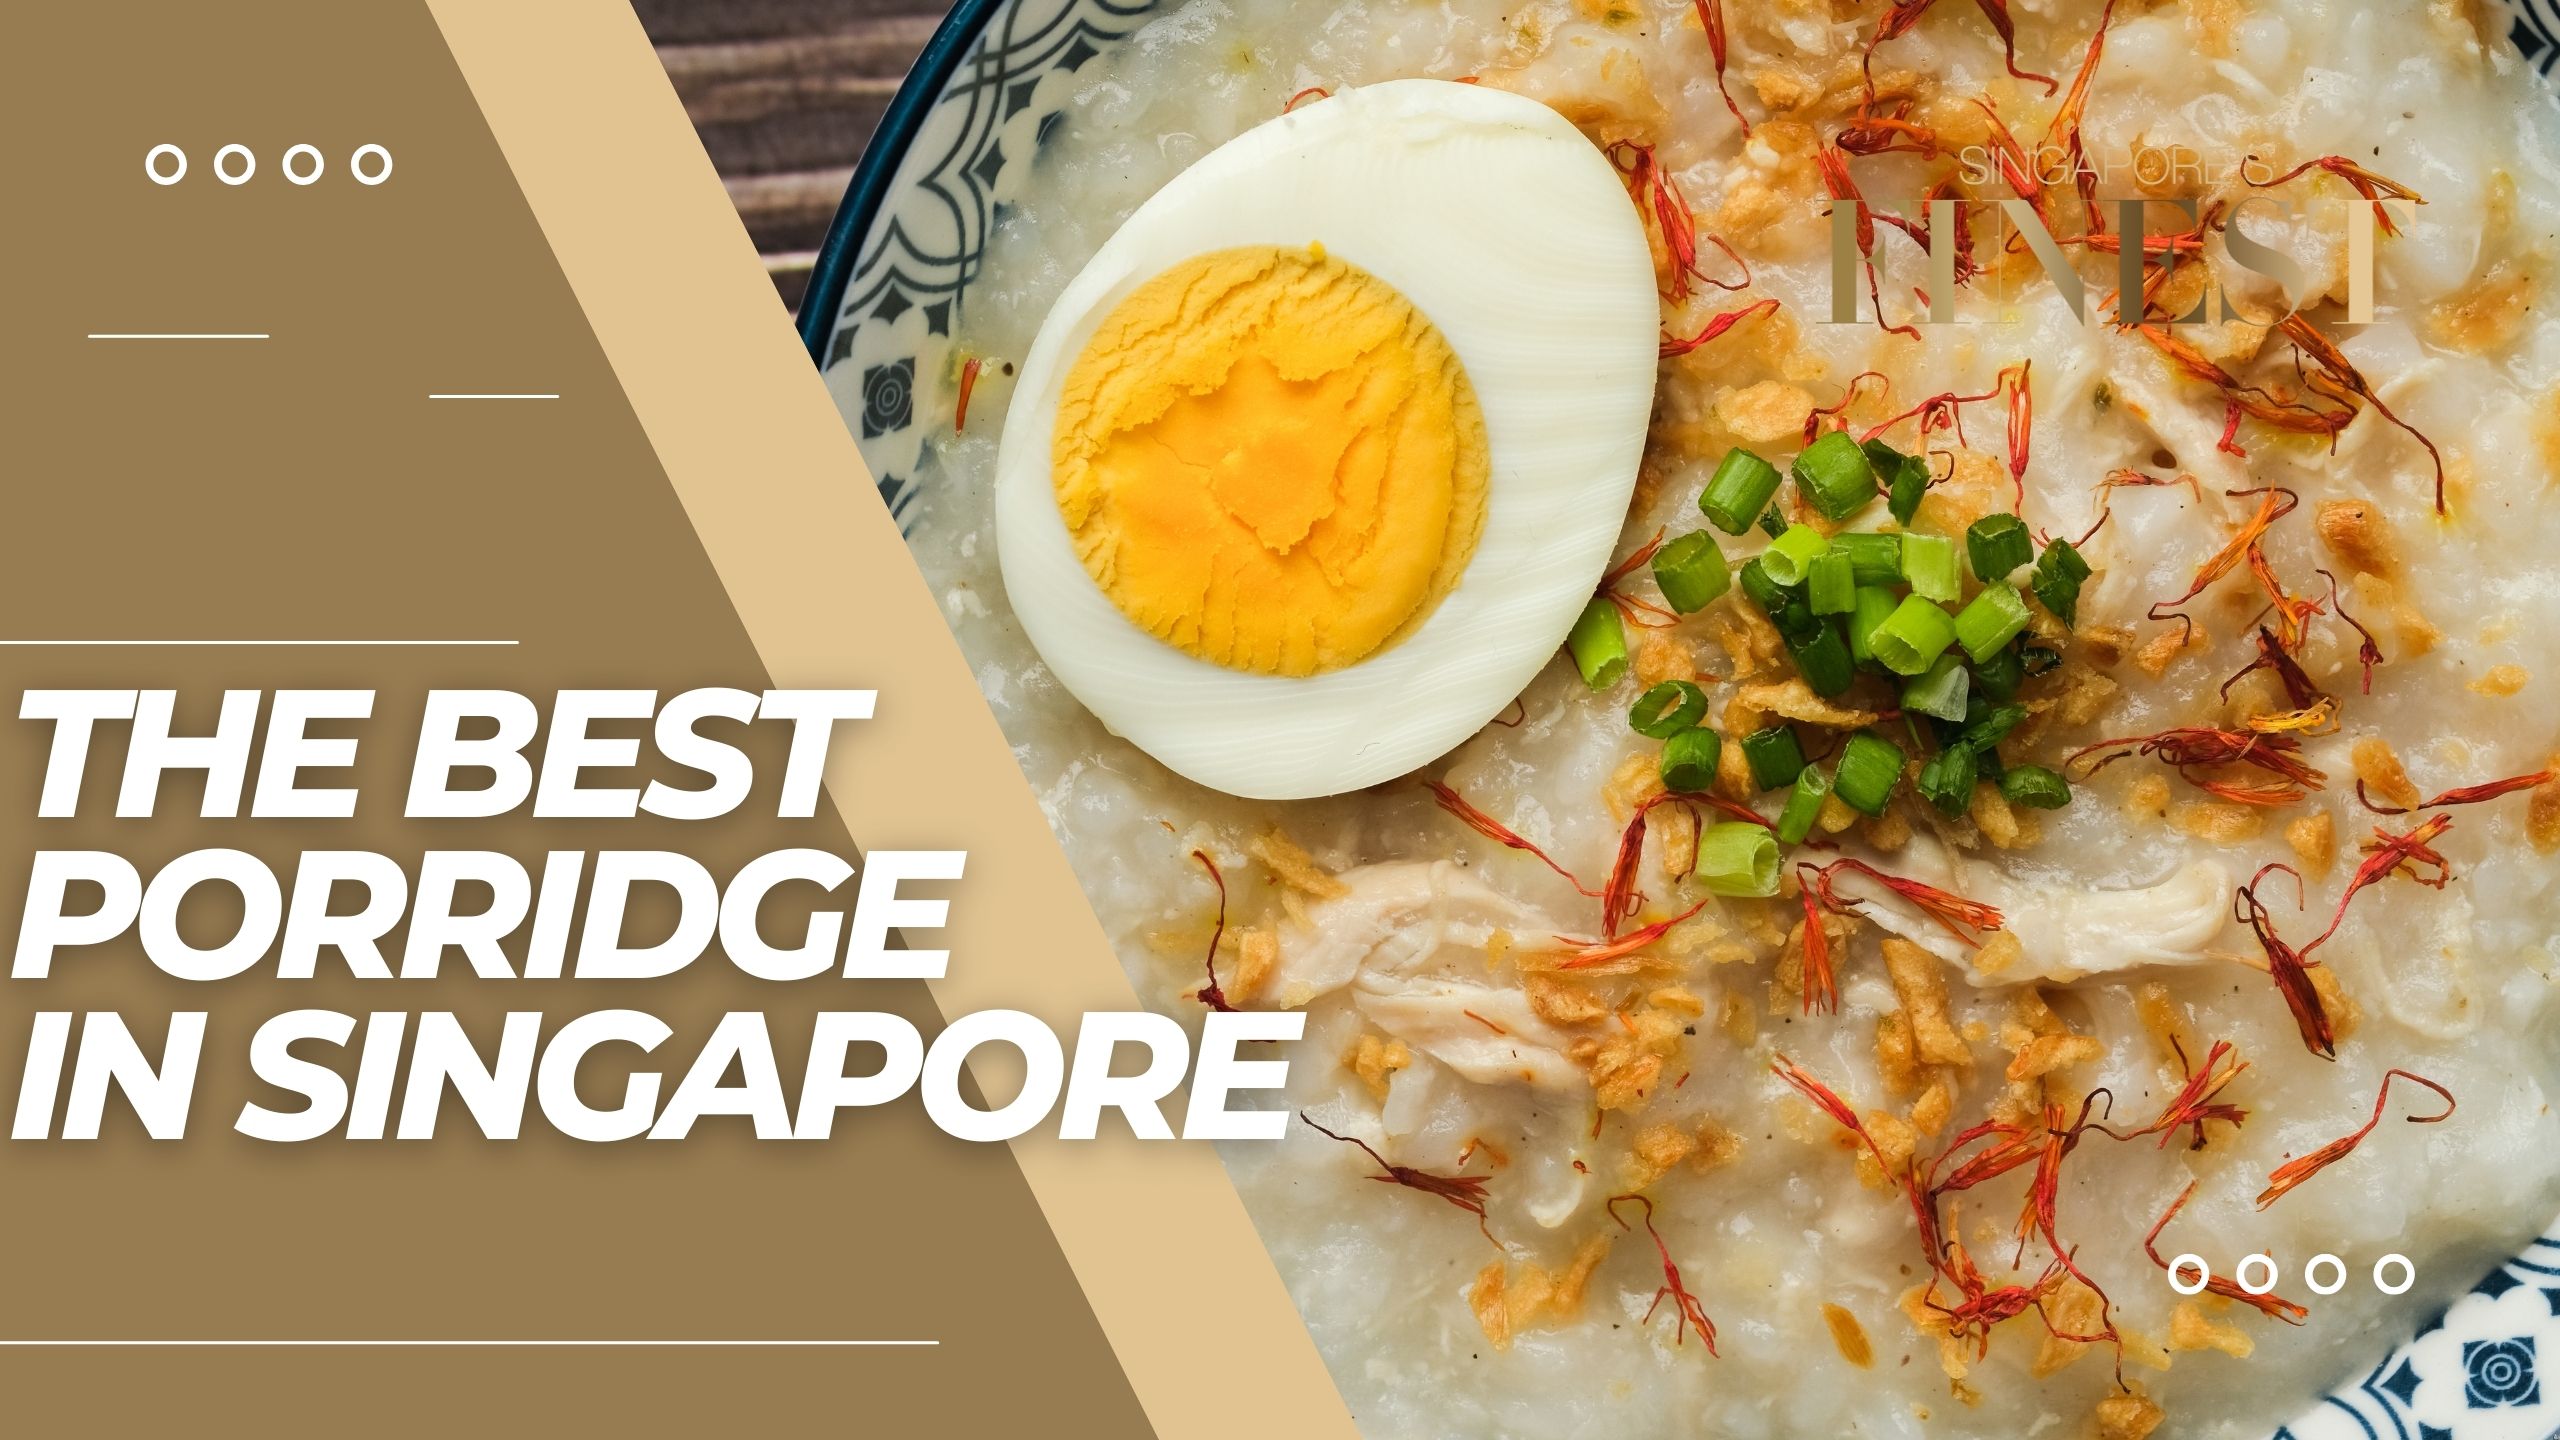 The Finest Porridge in Singapore